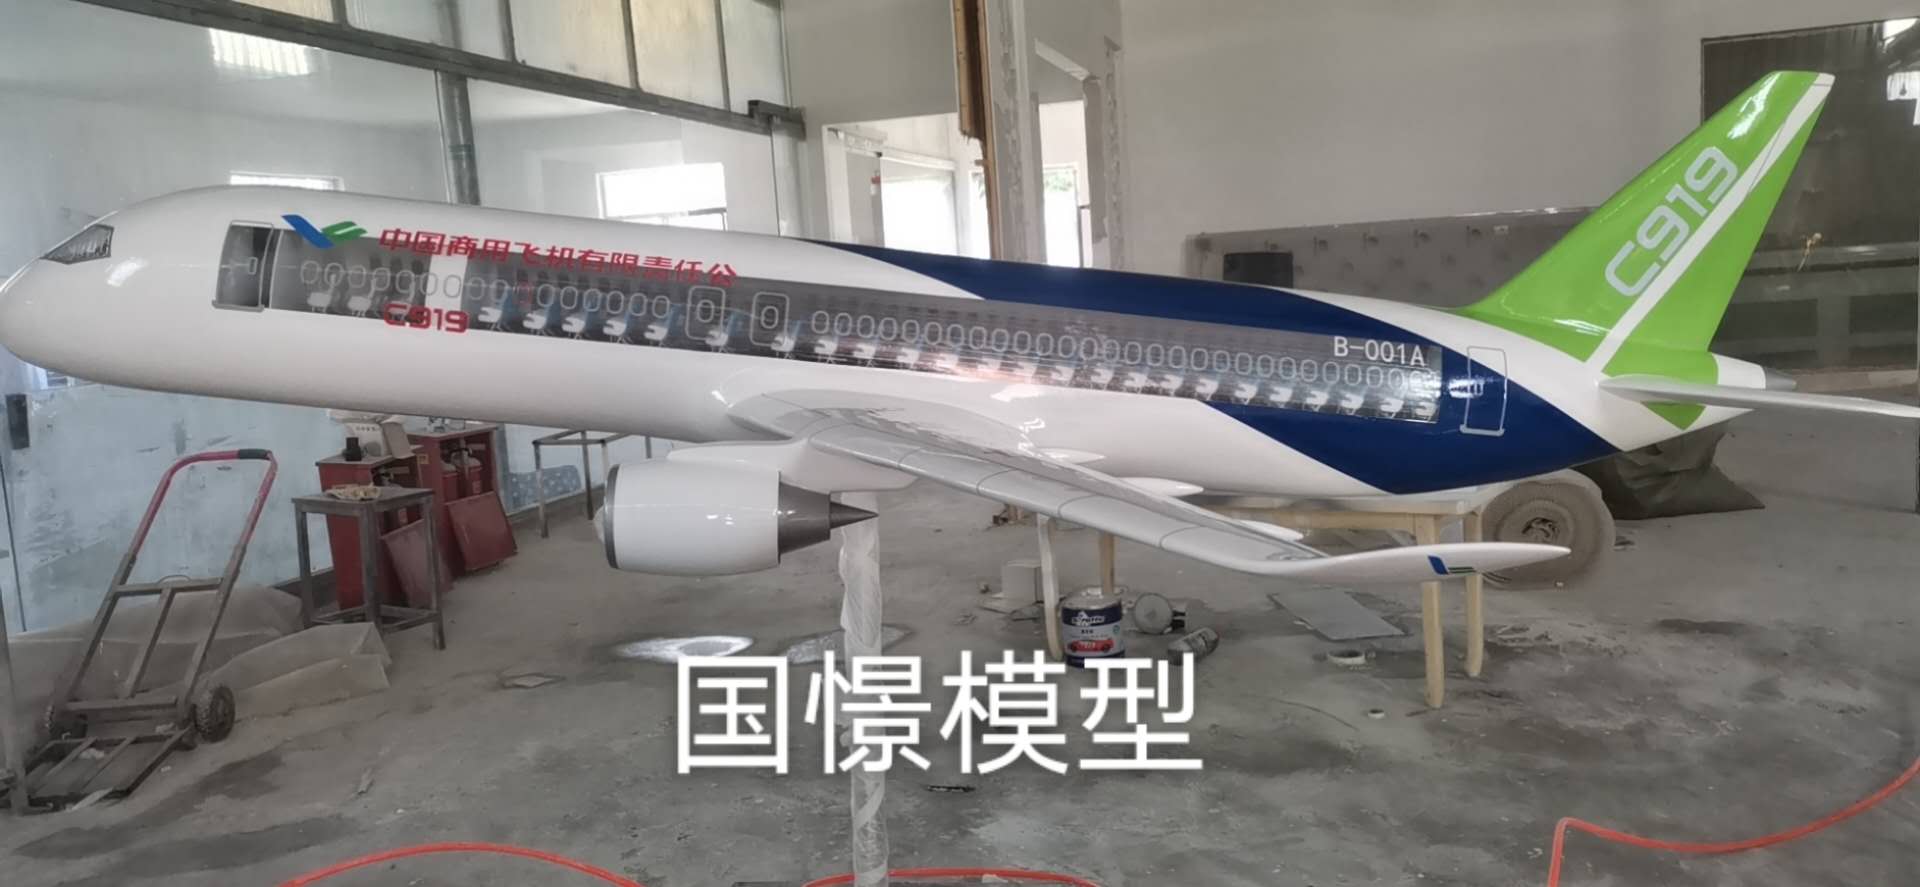 修文县飞机模型